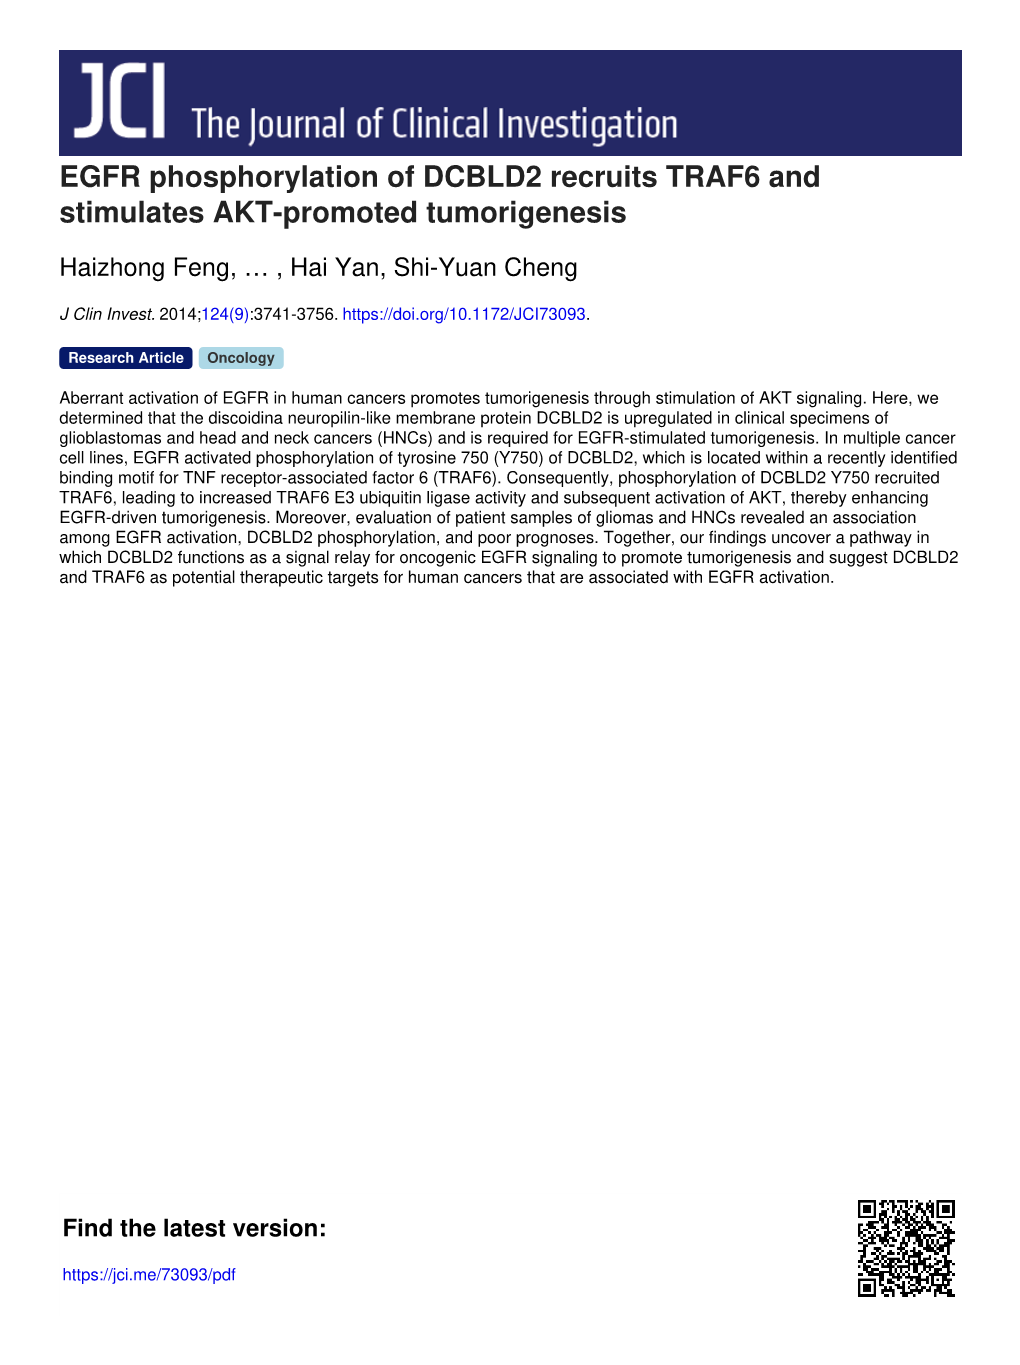 EGFR Phosphorylation of DCBLD2 Recruits TRAF6 and Stimulates AKT-Promoted Tumorigenesis